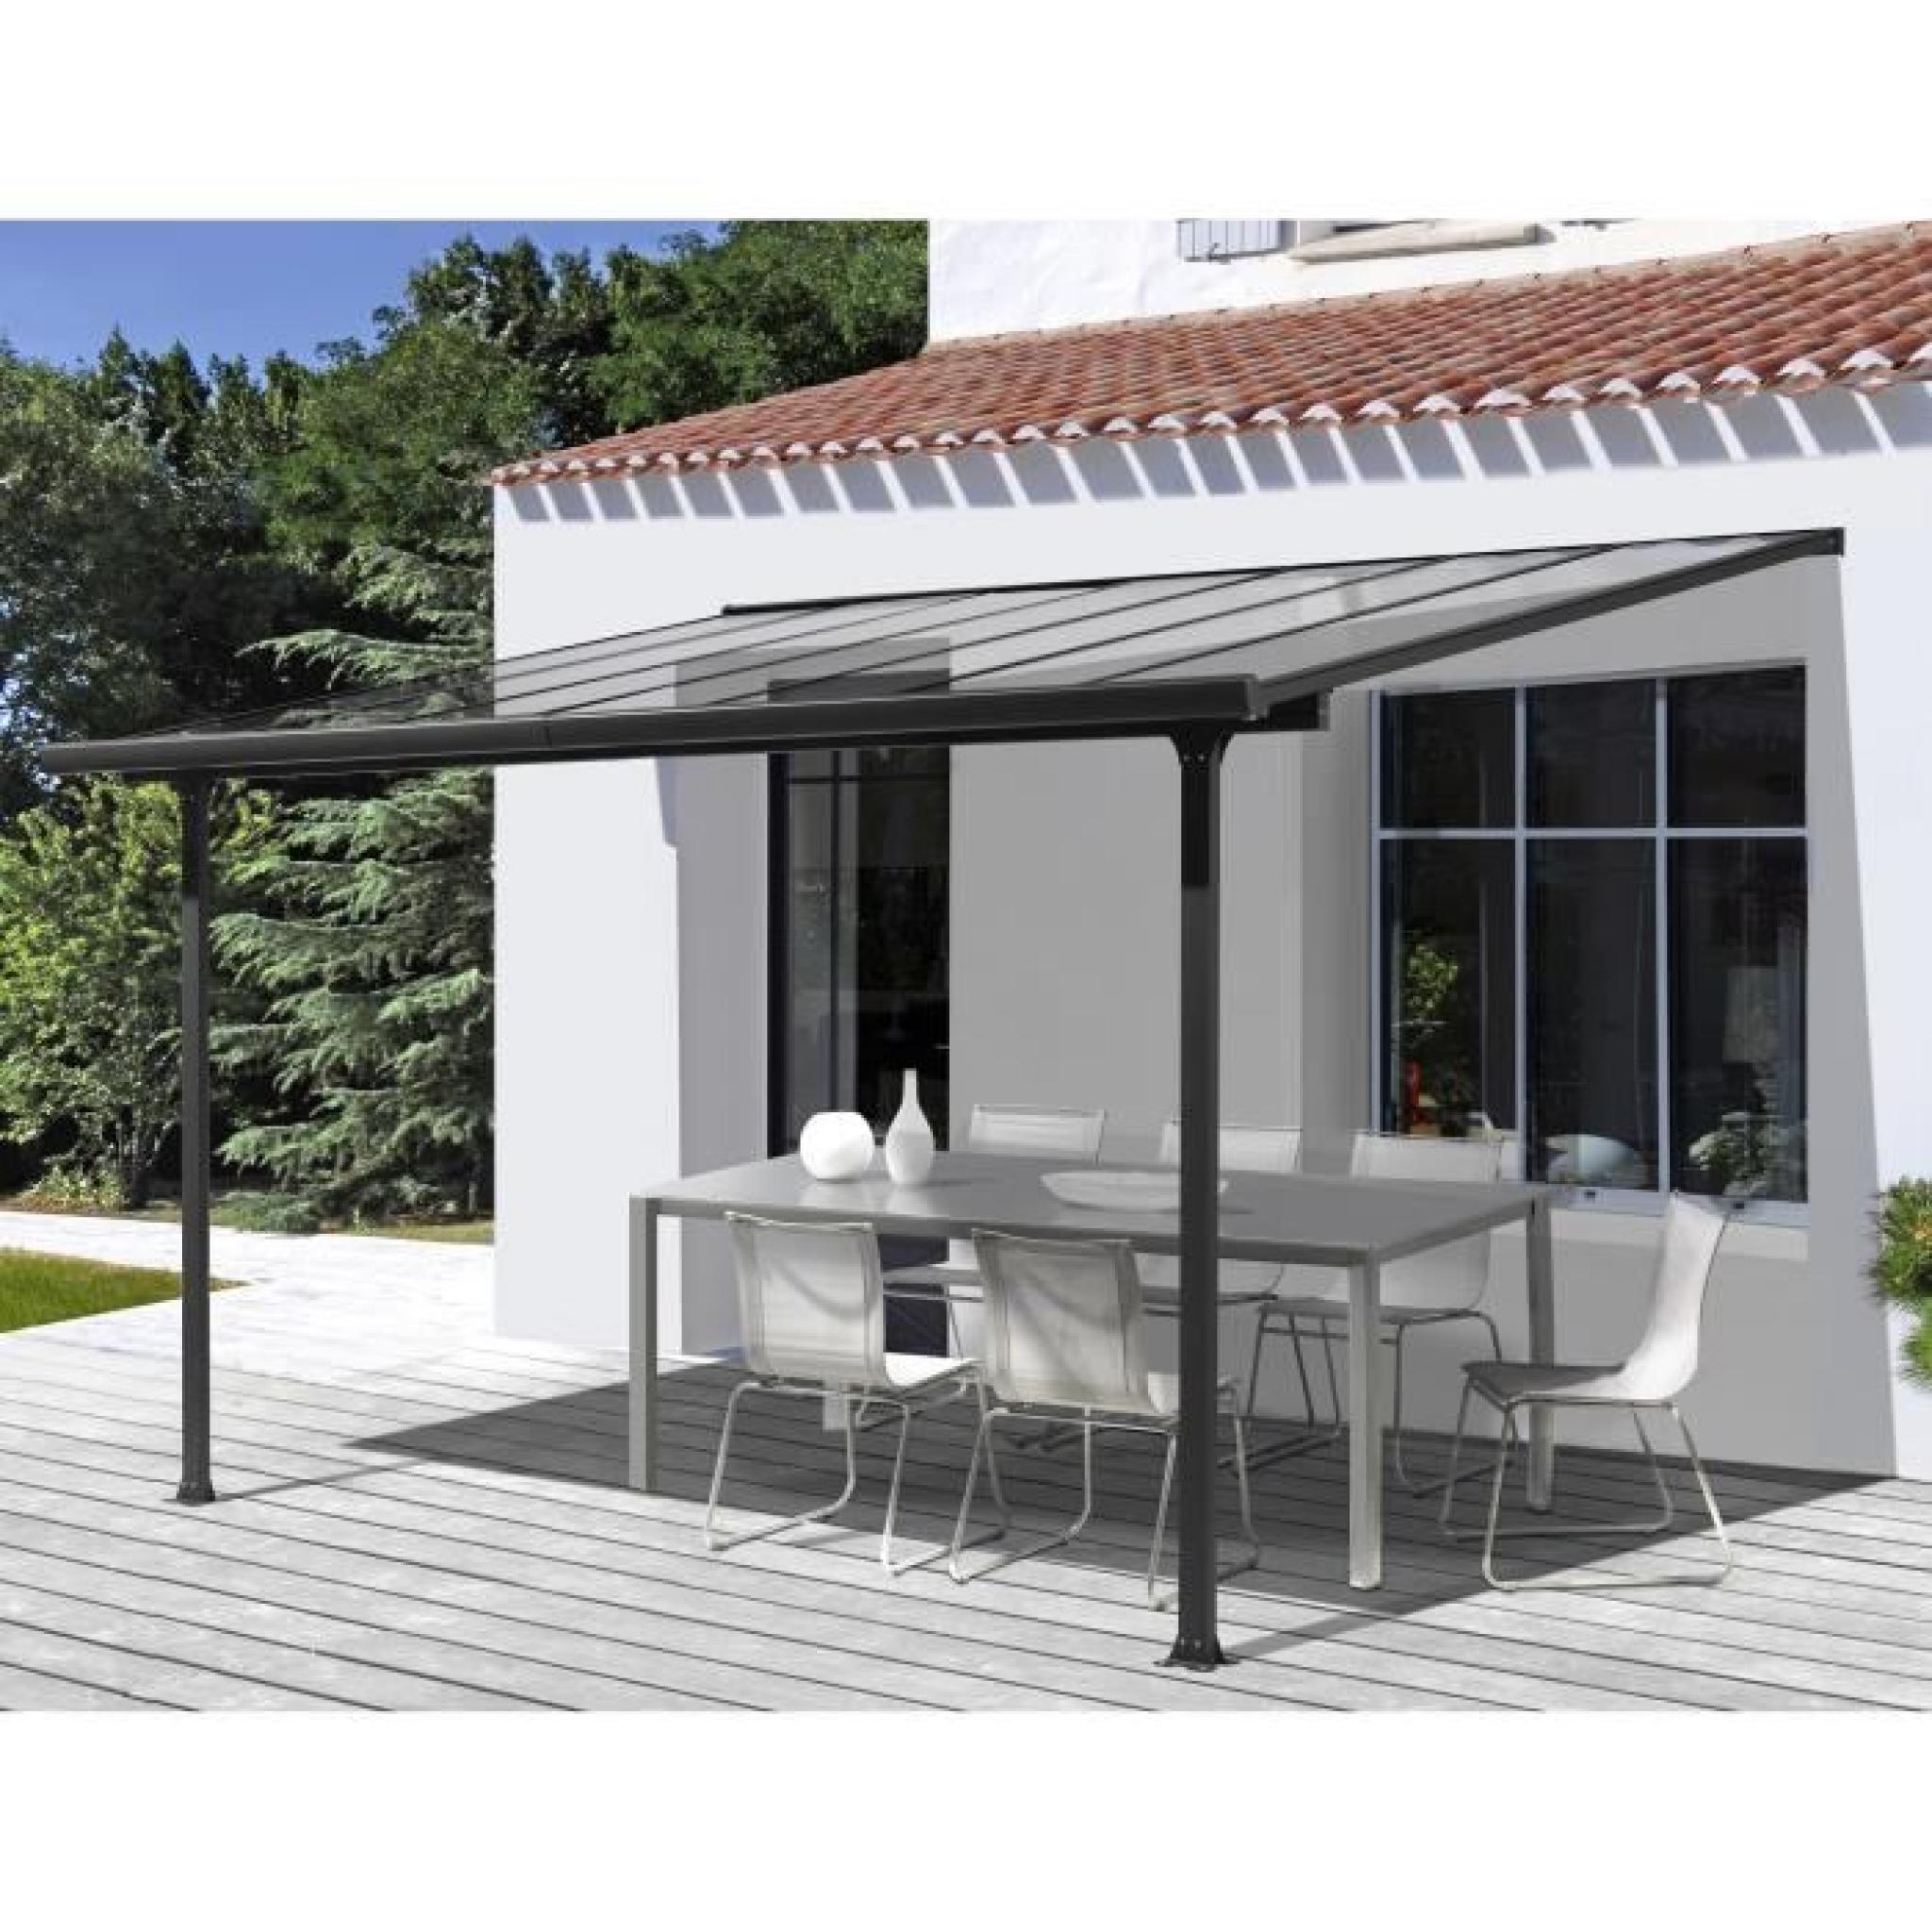 Toit-terrasse aluminium 9,21 m² - 300 x 307 cm - Gris anthracite pas cher